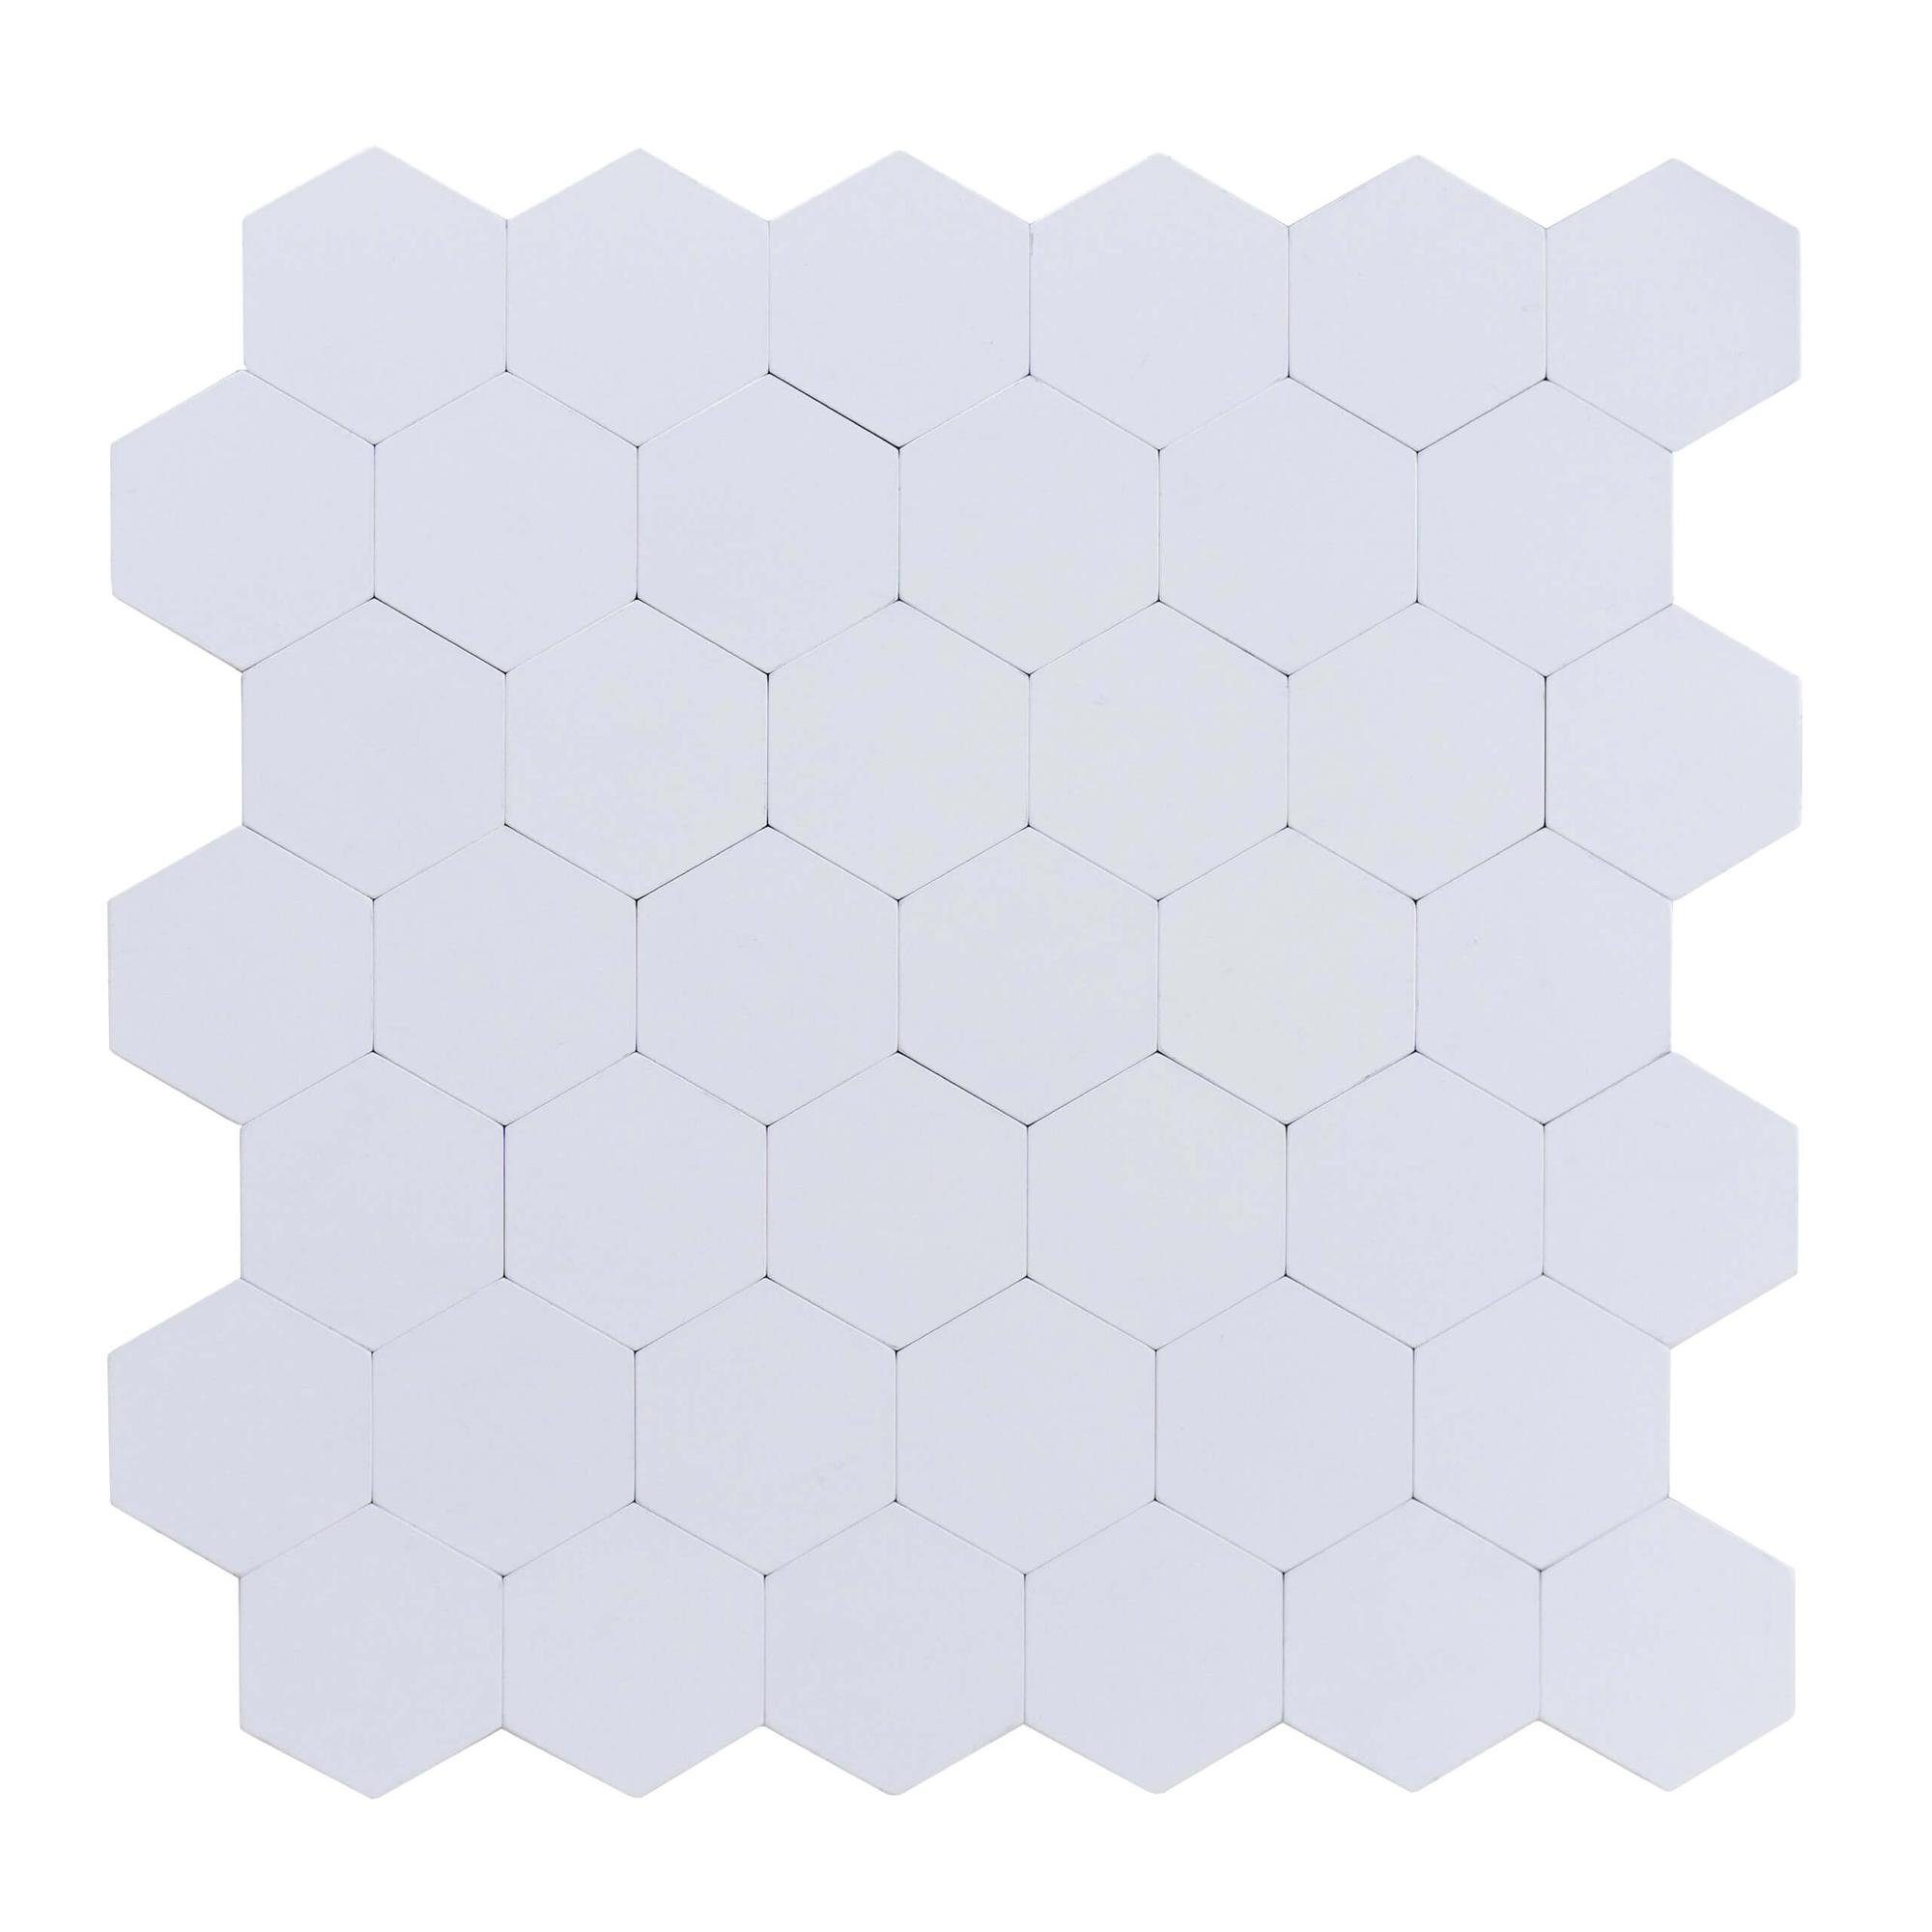 Dalsys Wandpaneel 1m² 11 Stück selbstklebend, (Weiß Wabenmuster, 11-tlg., Wandfliese) feuchtigskeitsbeständig, einfach montiert, hochwertiges Material